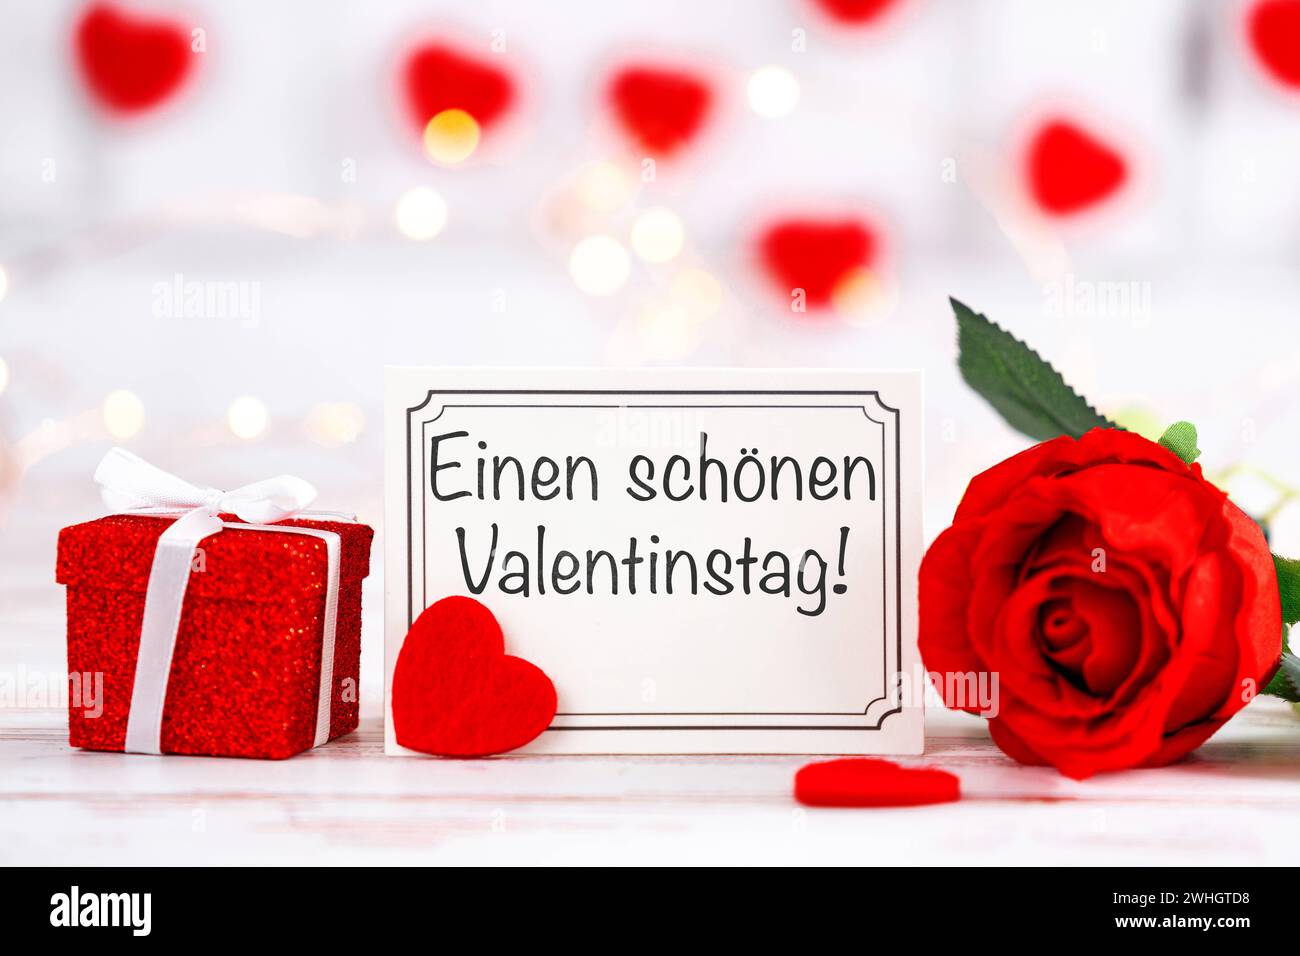 10 febbraio 2024: Saluto di San Valentino su un biglietto di auguri accanto a un regalo e una rosa rossa FOTOMONTAGE *** einen schönen Valentinstag Gruß auf einer Grußkarte neben einem Geschenk und einer roten Rose FOTOMONTAGE Foto Stock